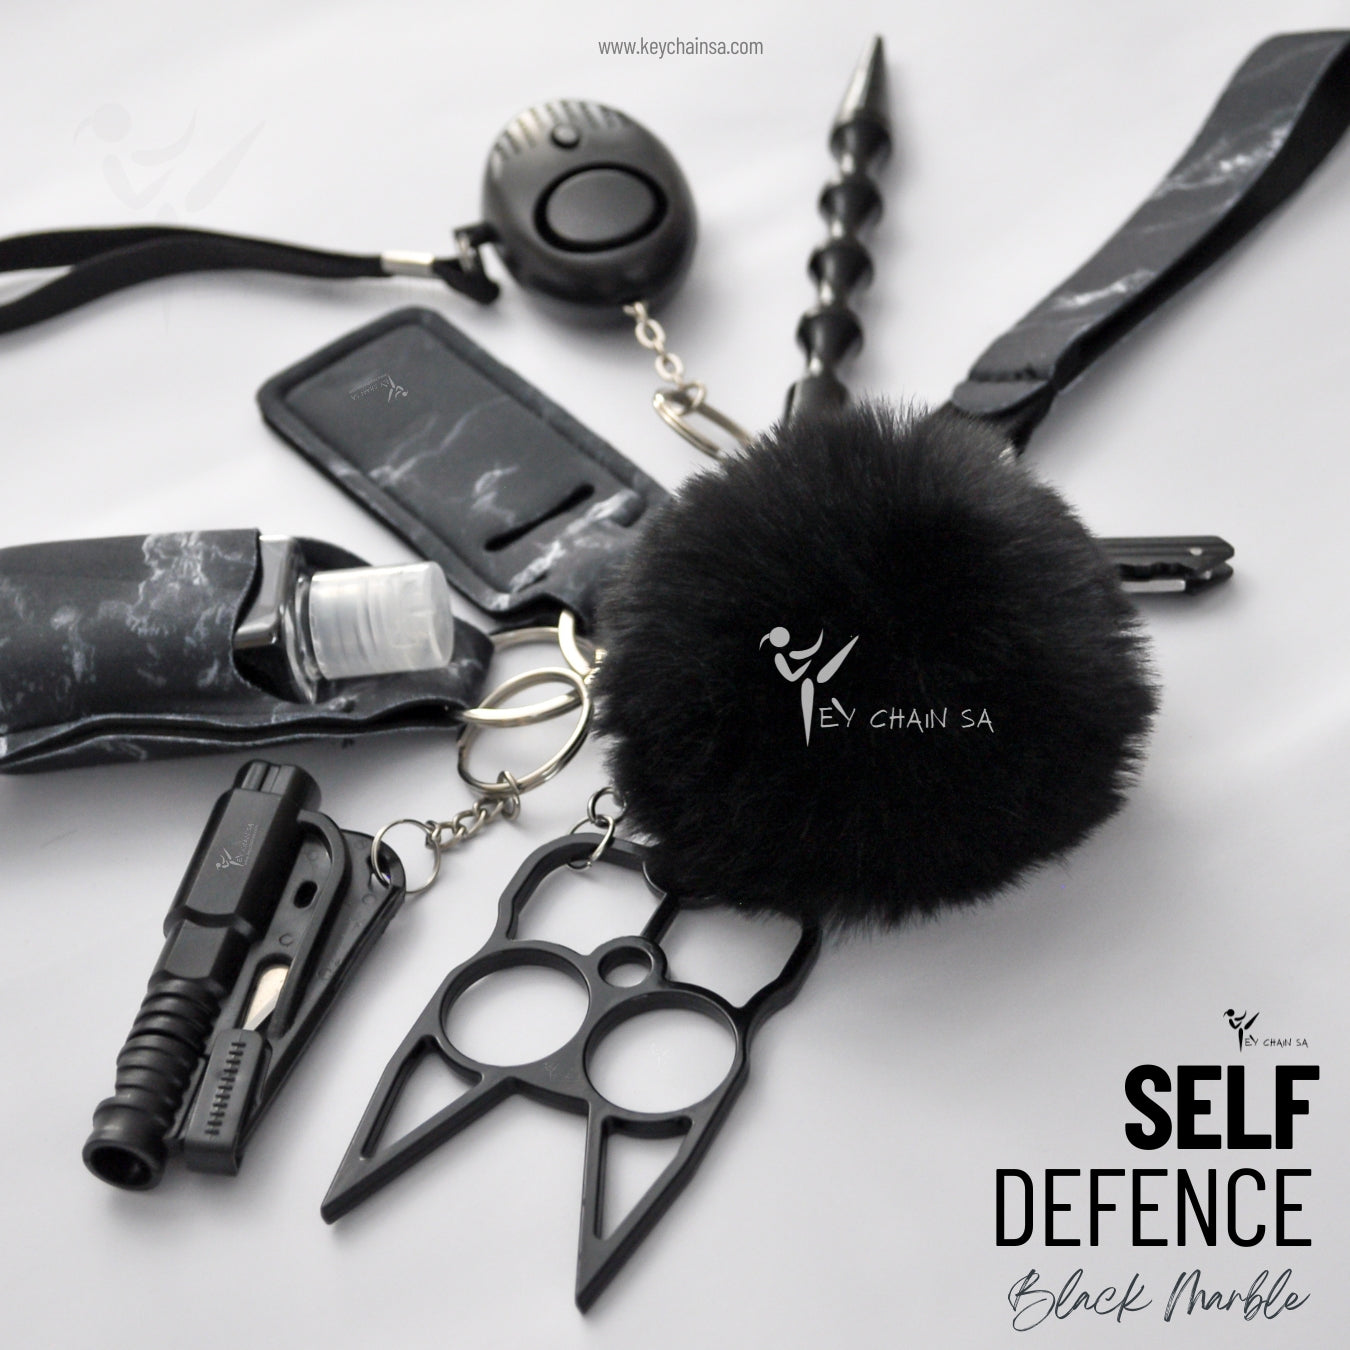 Legal Self Defense Keychain